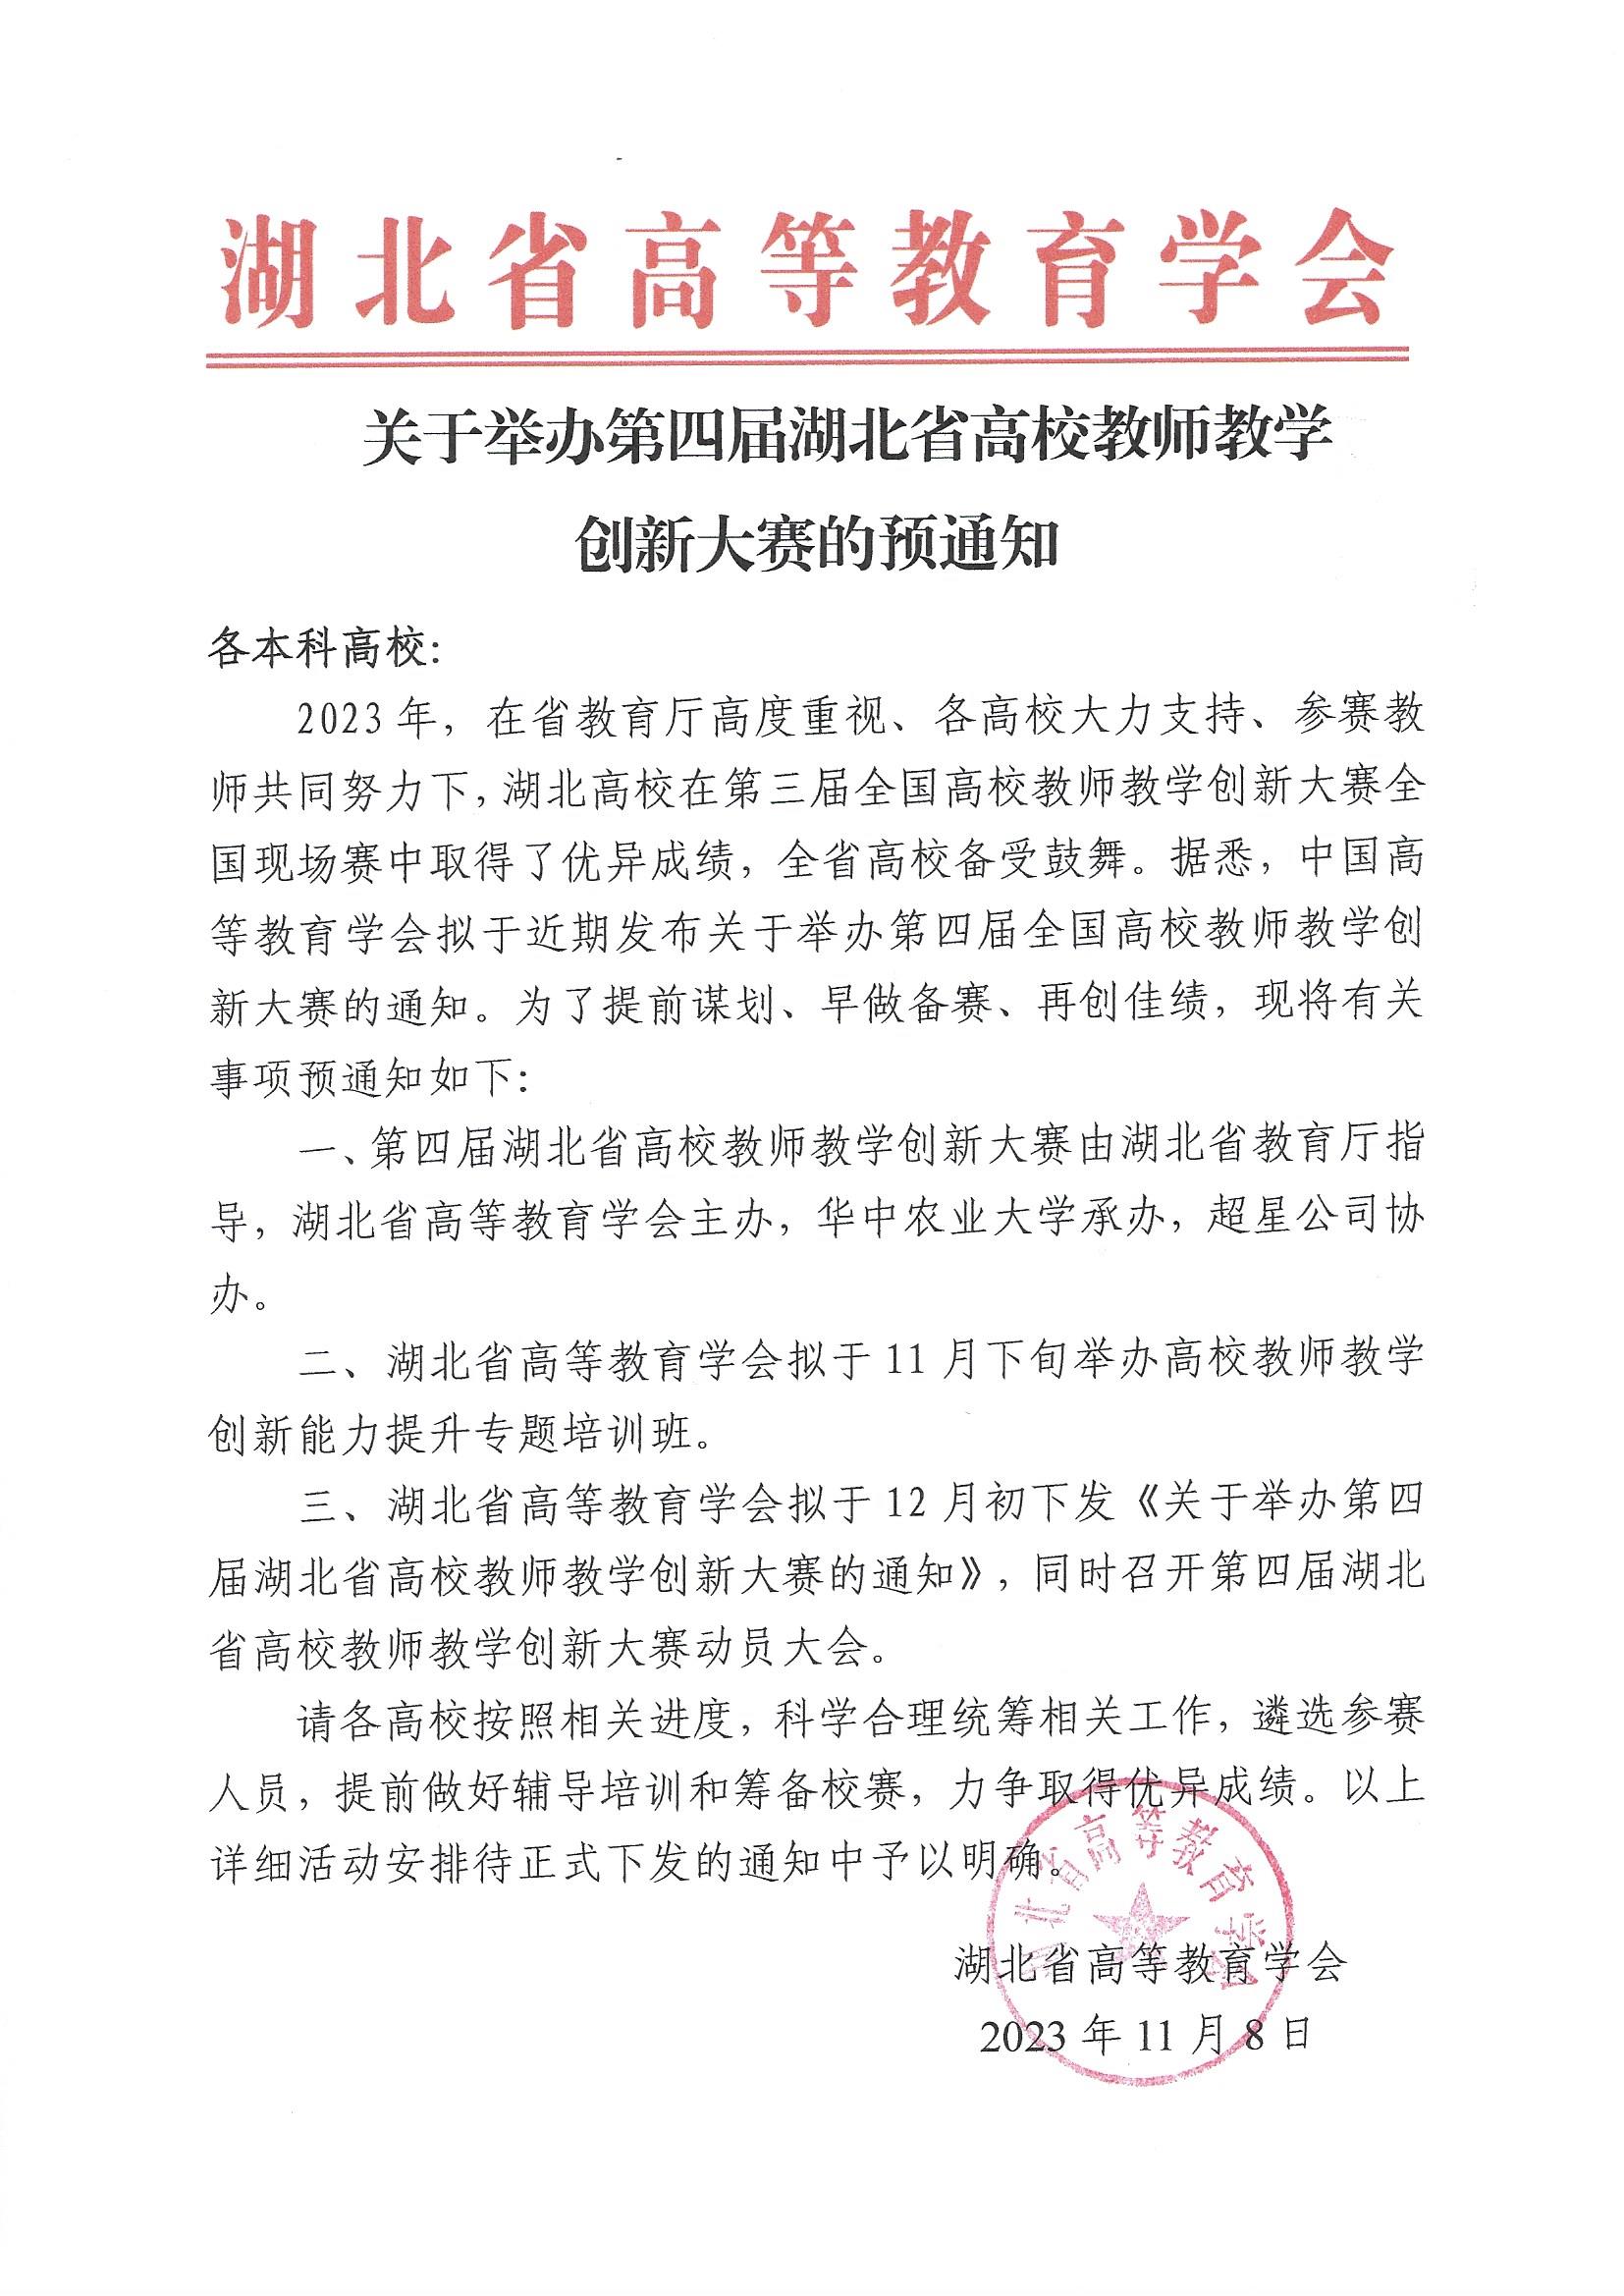 2023.11.8关于举办第四届湖北省高校教师教学创新大赛的预通知(2).jpg